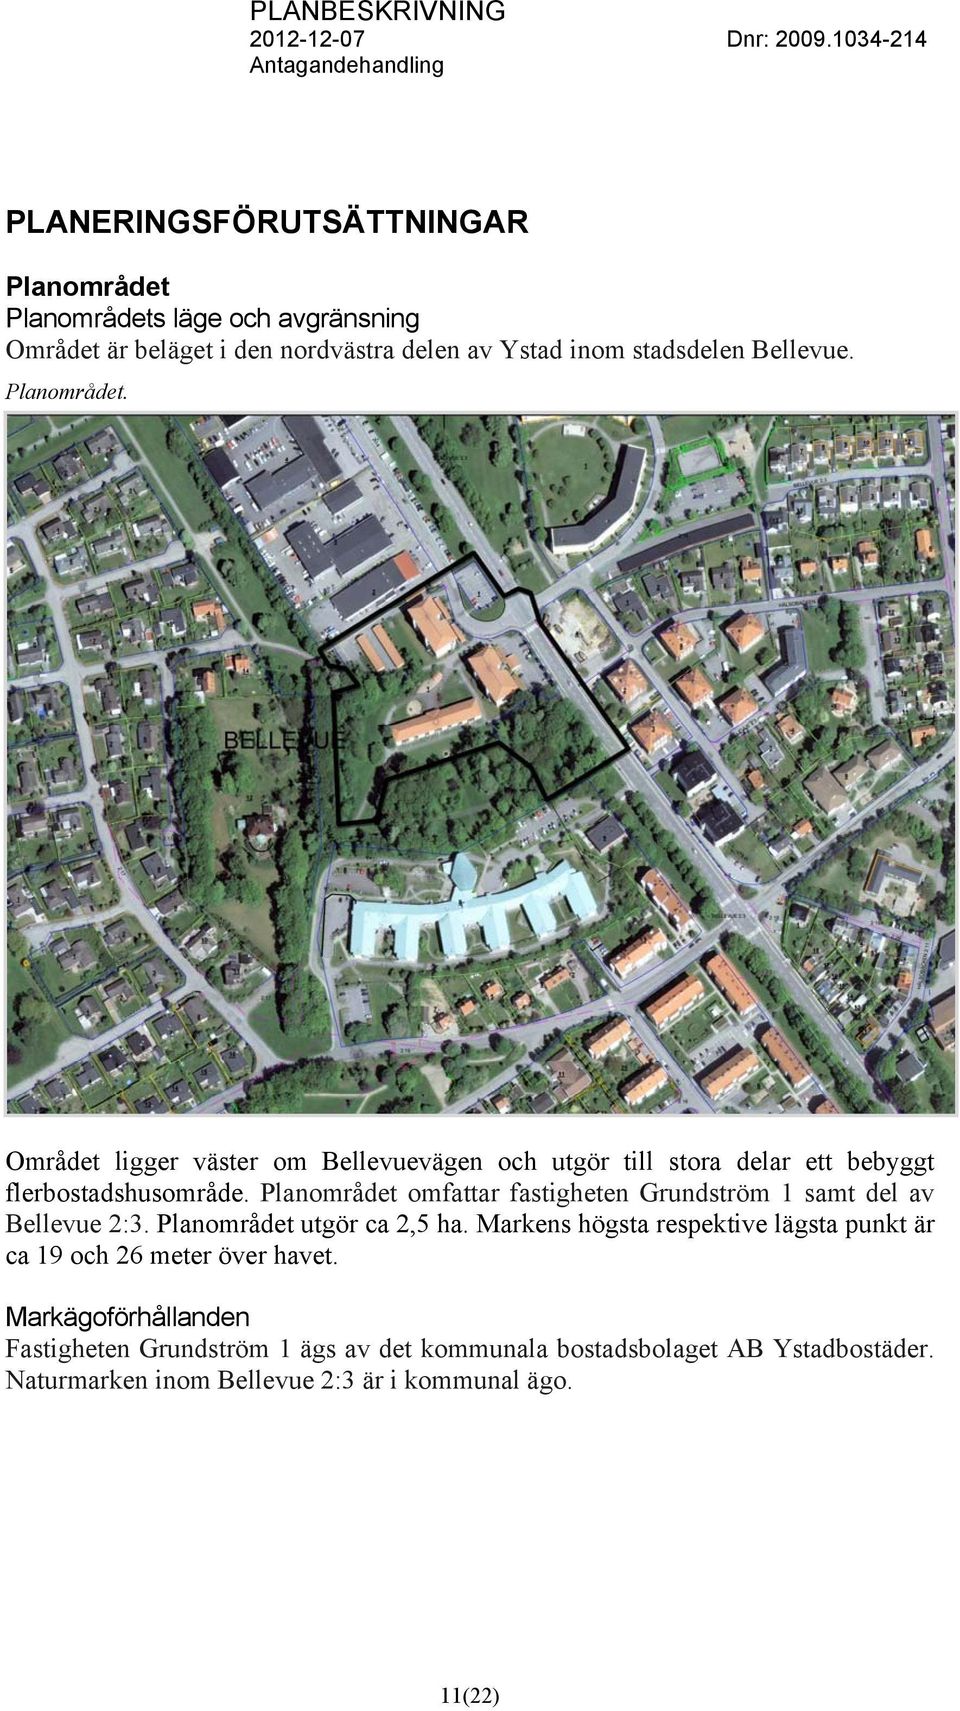 Planområdet omfattar fastigheten Grundström 1 samt del av Bellevue 2:3. Planområdet utgör ca 2,5 ha.